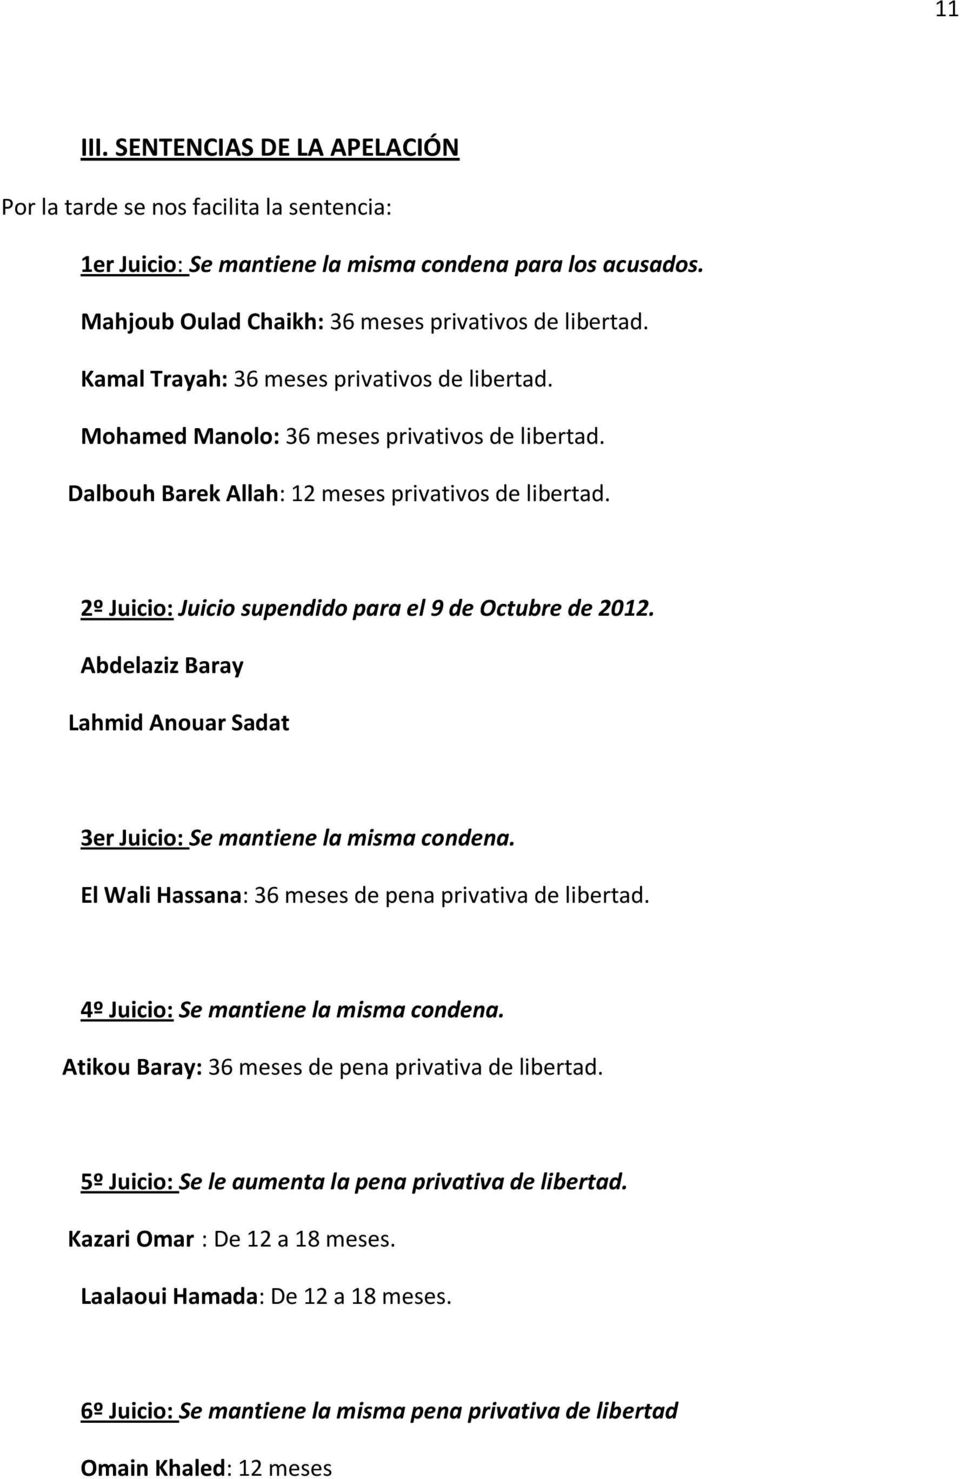 2º Juicio: Juicio supendido para el 9 de Octubre de 2012. Abdelaziz Baray Lahmid Anouar Sadat 3er Juicio: Se mantiene la misma condena. El Wali Hassana: 36 meses de pena privativa de libertad.